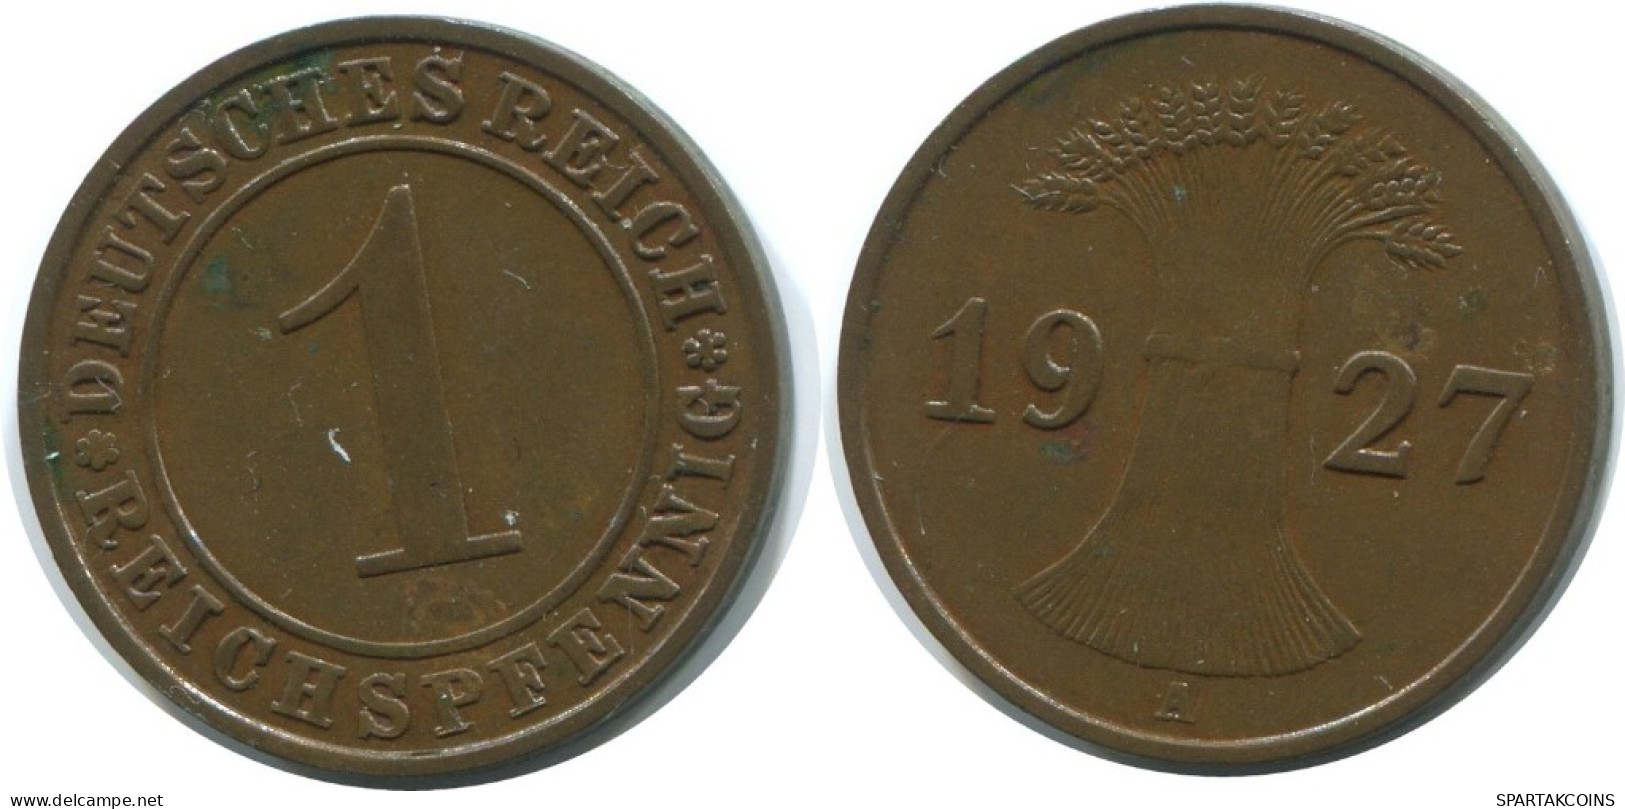 1 REICHSPFENNIG 1927 A ALEMANIA Moneda GERMANY #AE198.E.A - 1 Rentenpfennig & 1 Reichspfennig